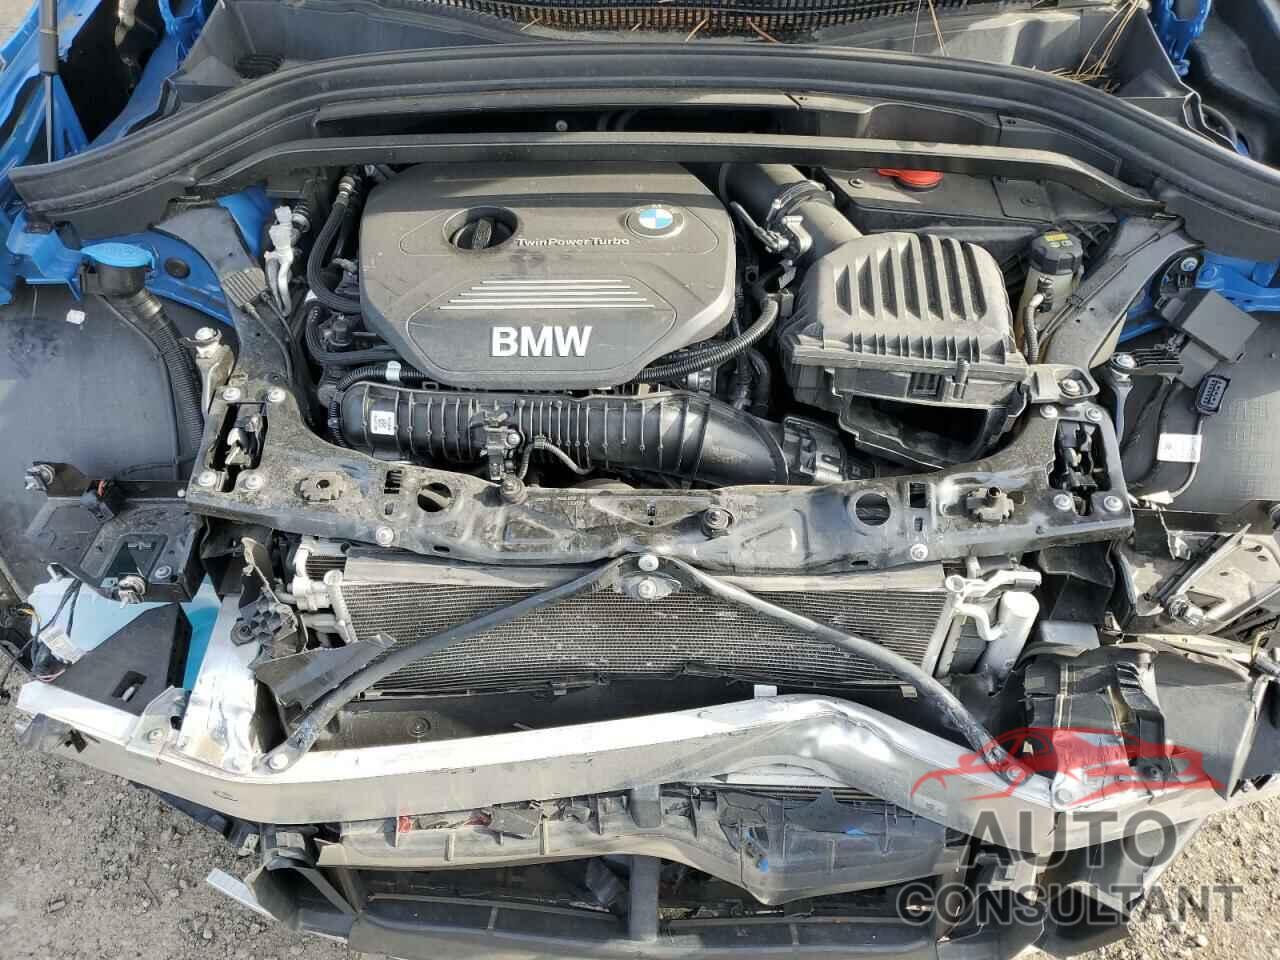 BMW X2 2018 - WBXYJ5C3XJEF76479